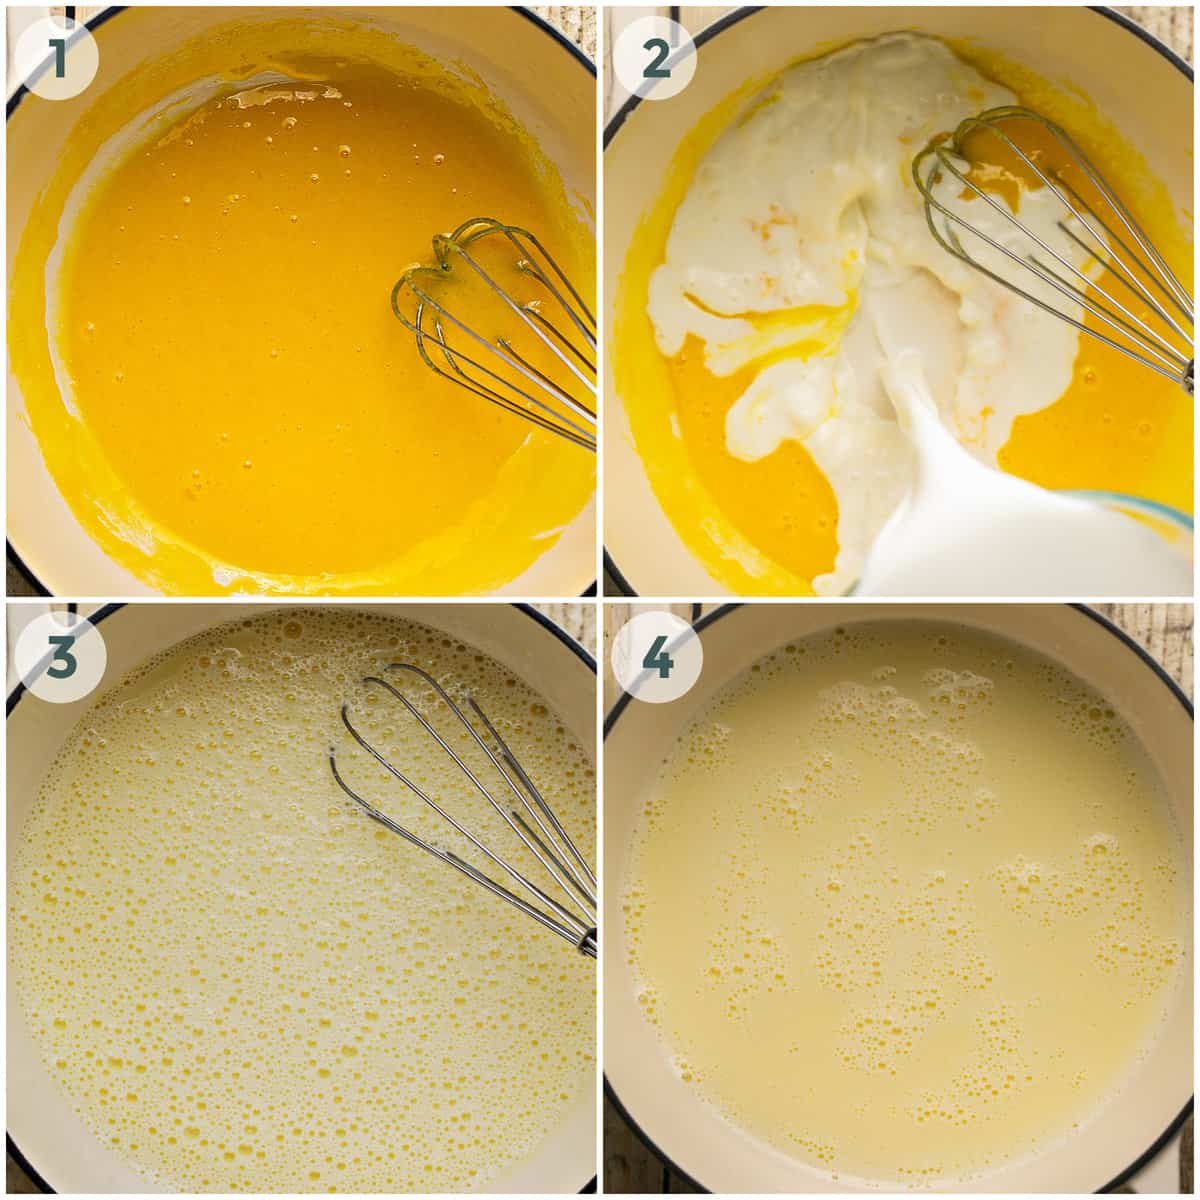 steps 1-4 of eggnog recipe